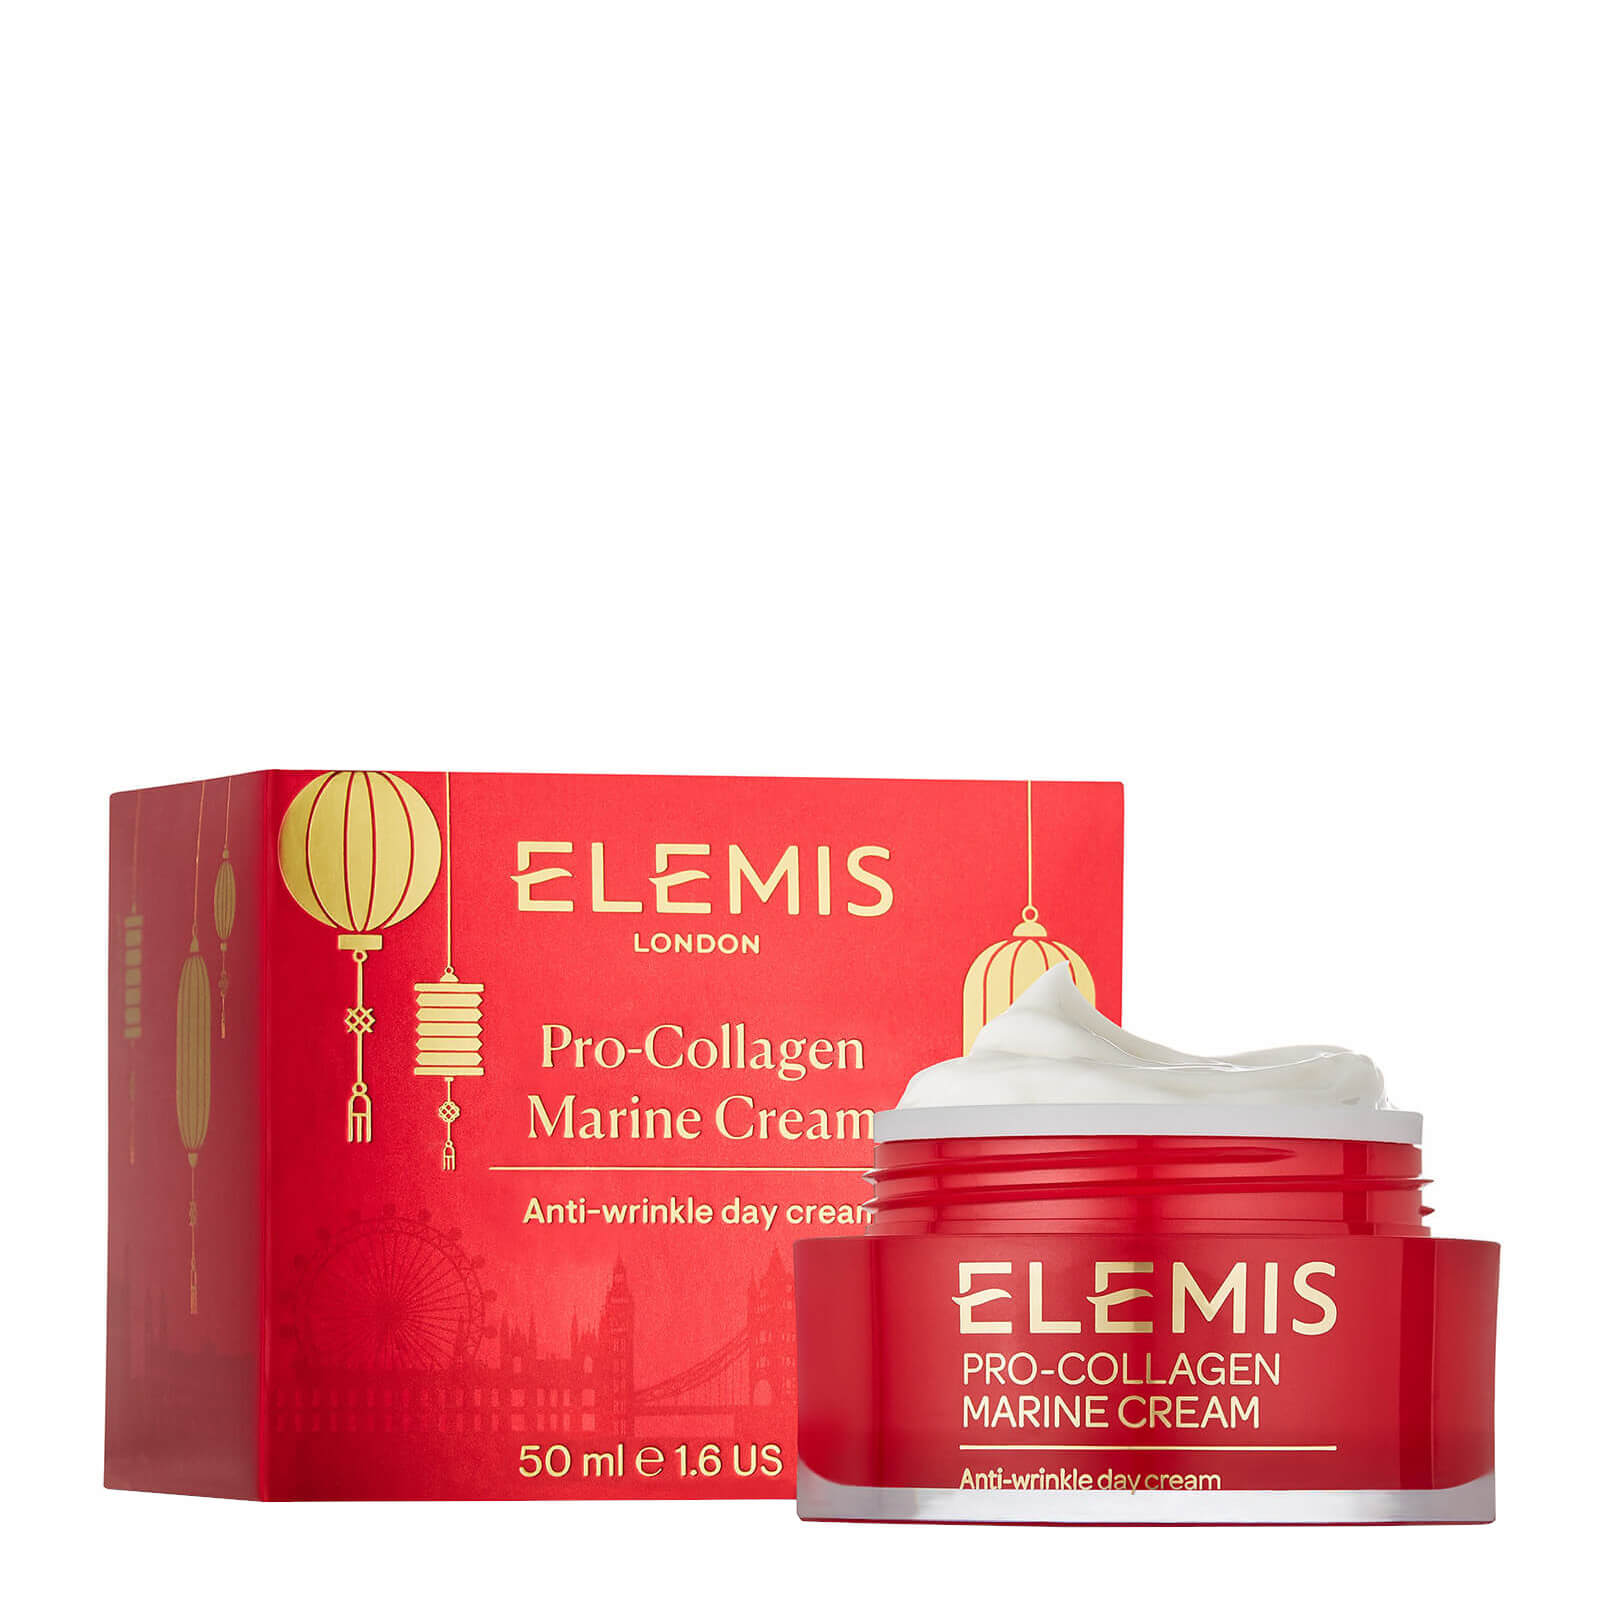 Limited Edition Lunar New Year Pro-Collagen Marine Cream 50ml